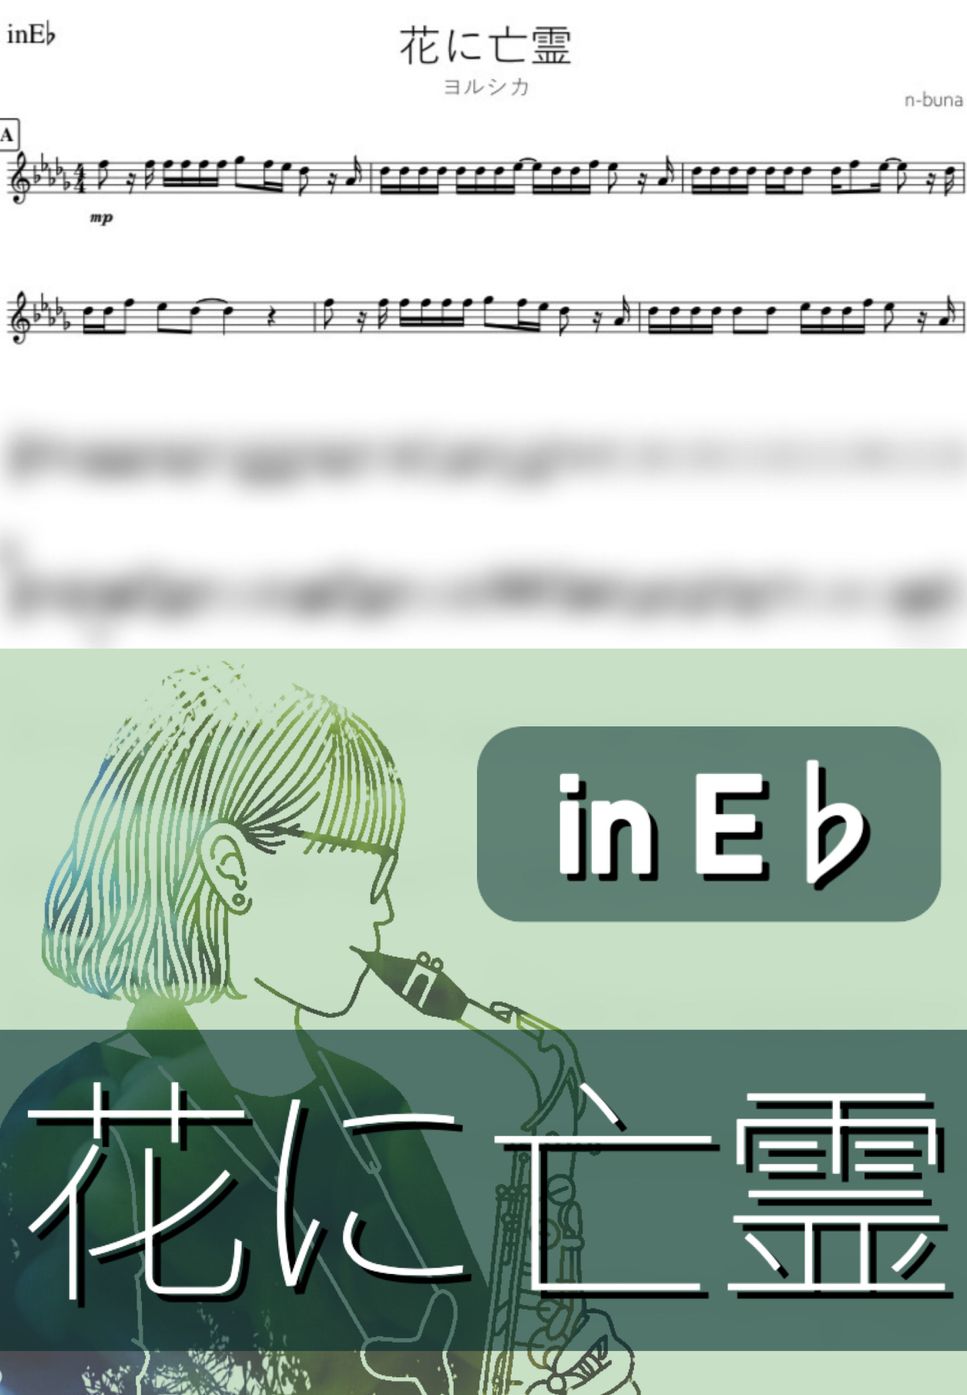 ヨルシカ - 花に亡霊 (E♭) by kanamusic